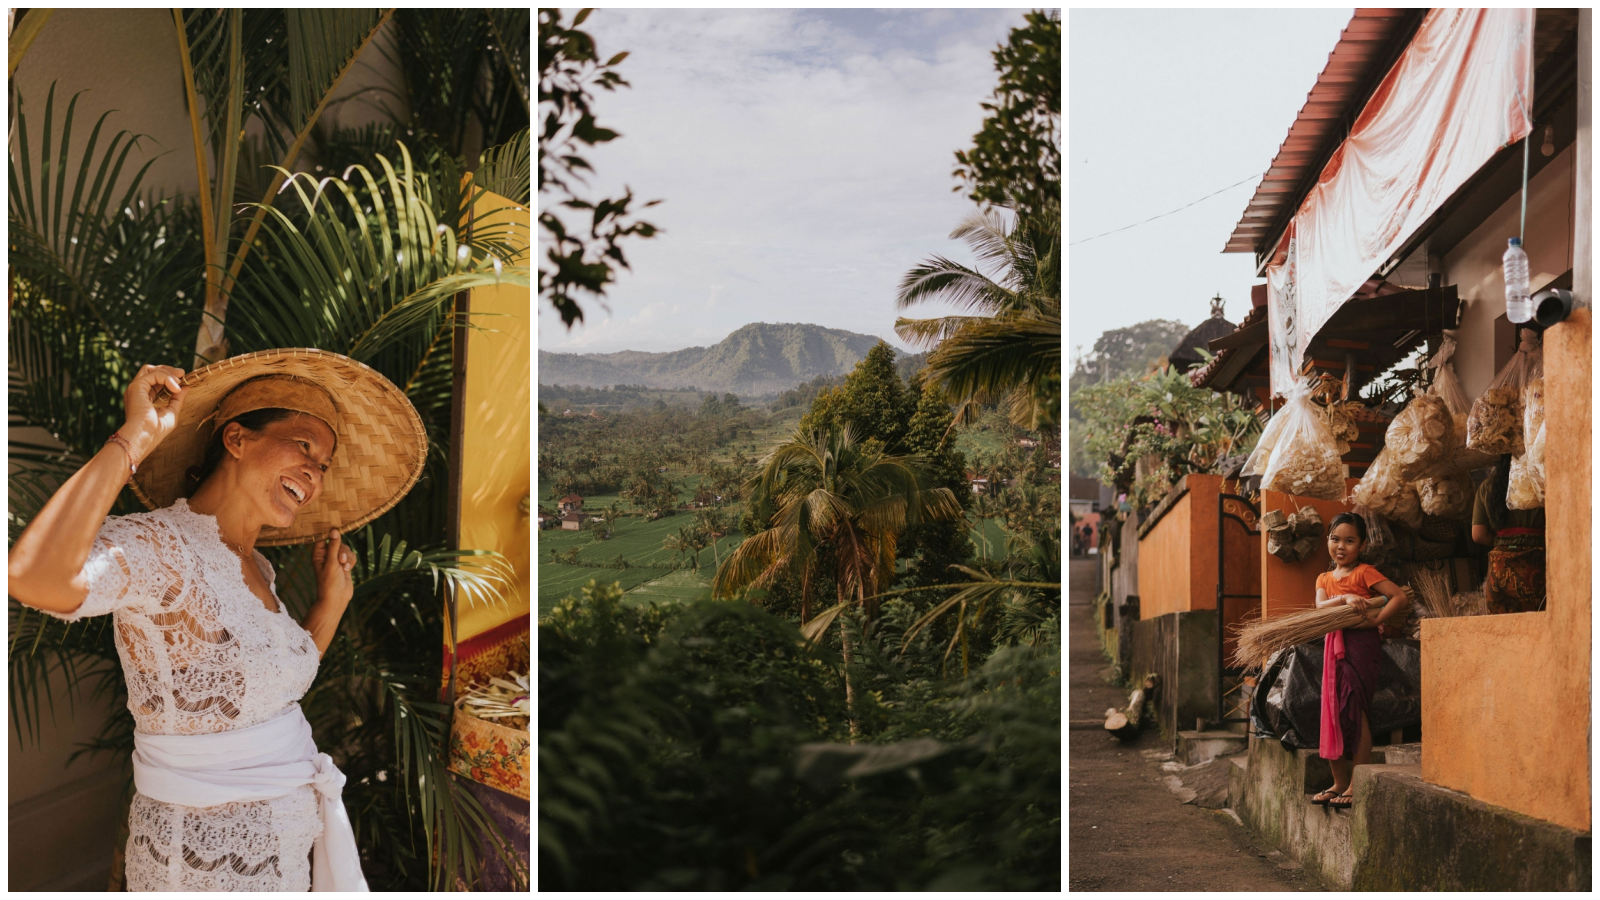 Magična tura Balijem: Fotografkinja Ivana Vareško vodi nas na mjesto s najtoplijim osmijesima